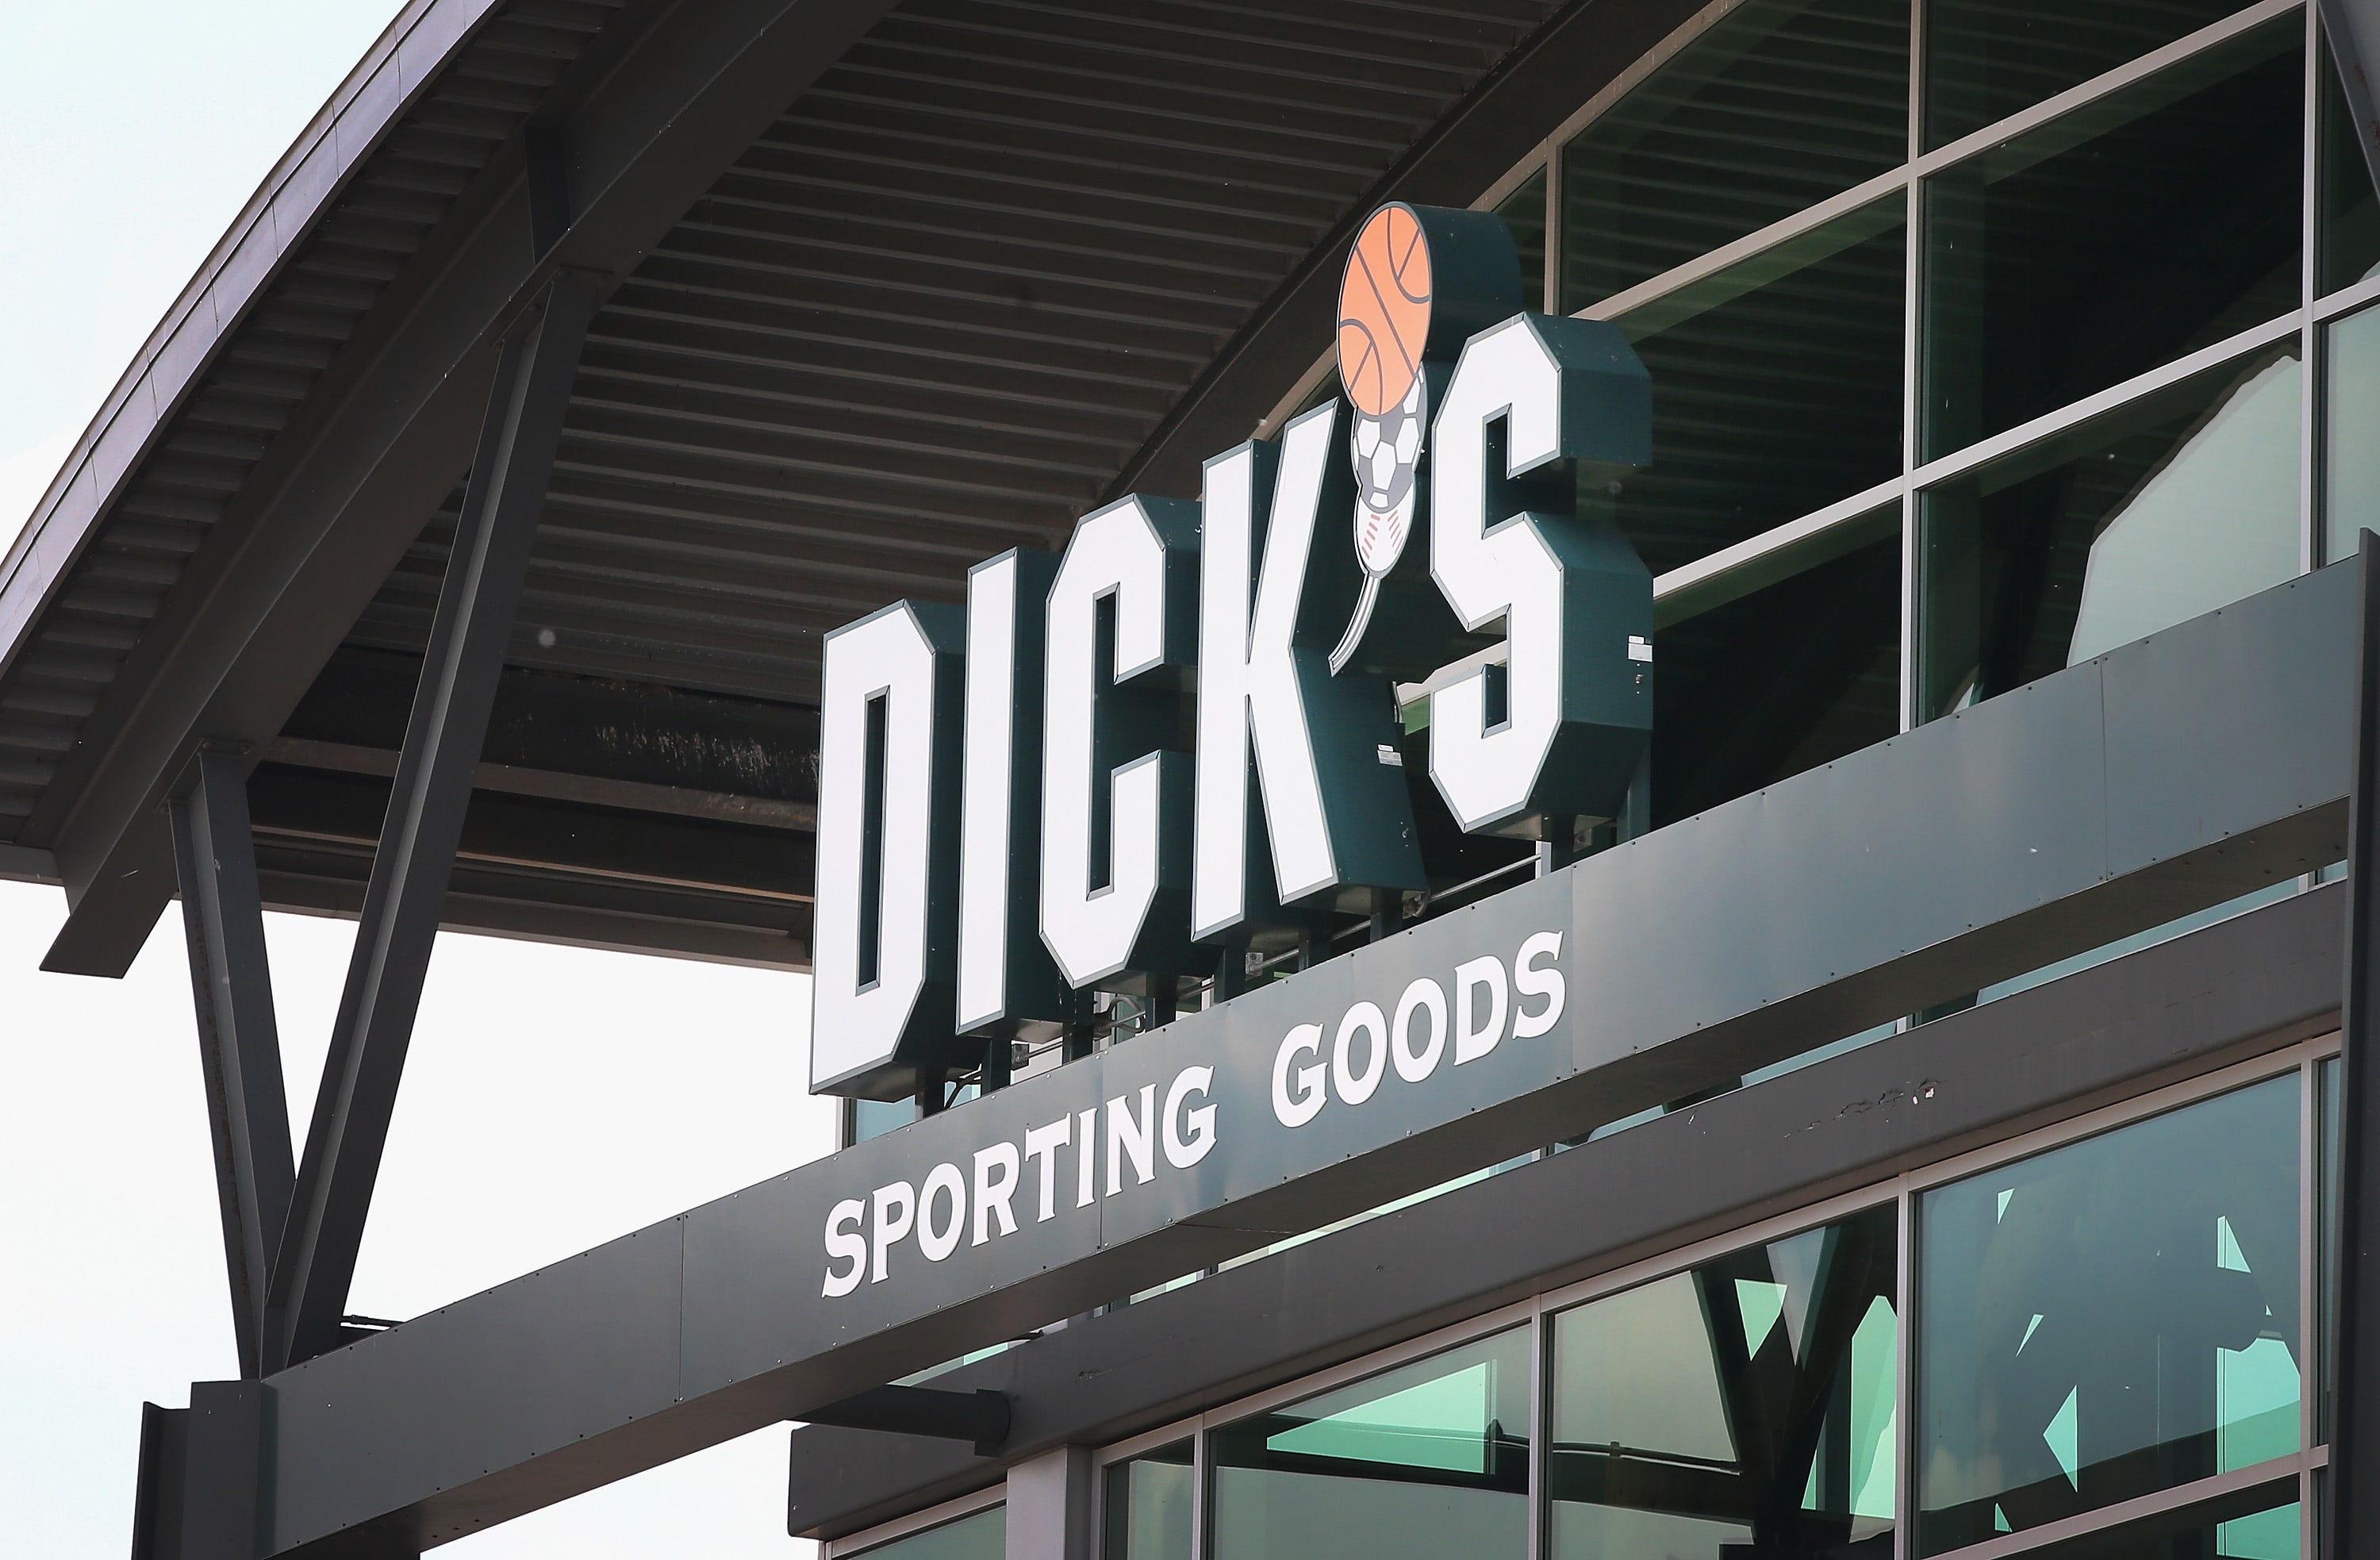 Cramer nhìn thấy tiềm năng của Dick’s Sporting Goods, bất chấp sự suy giảm của quý